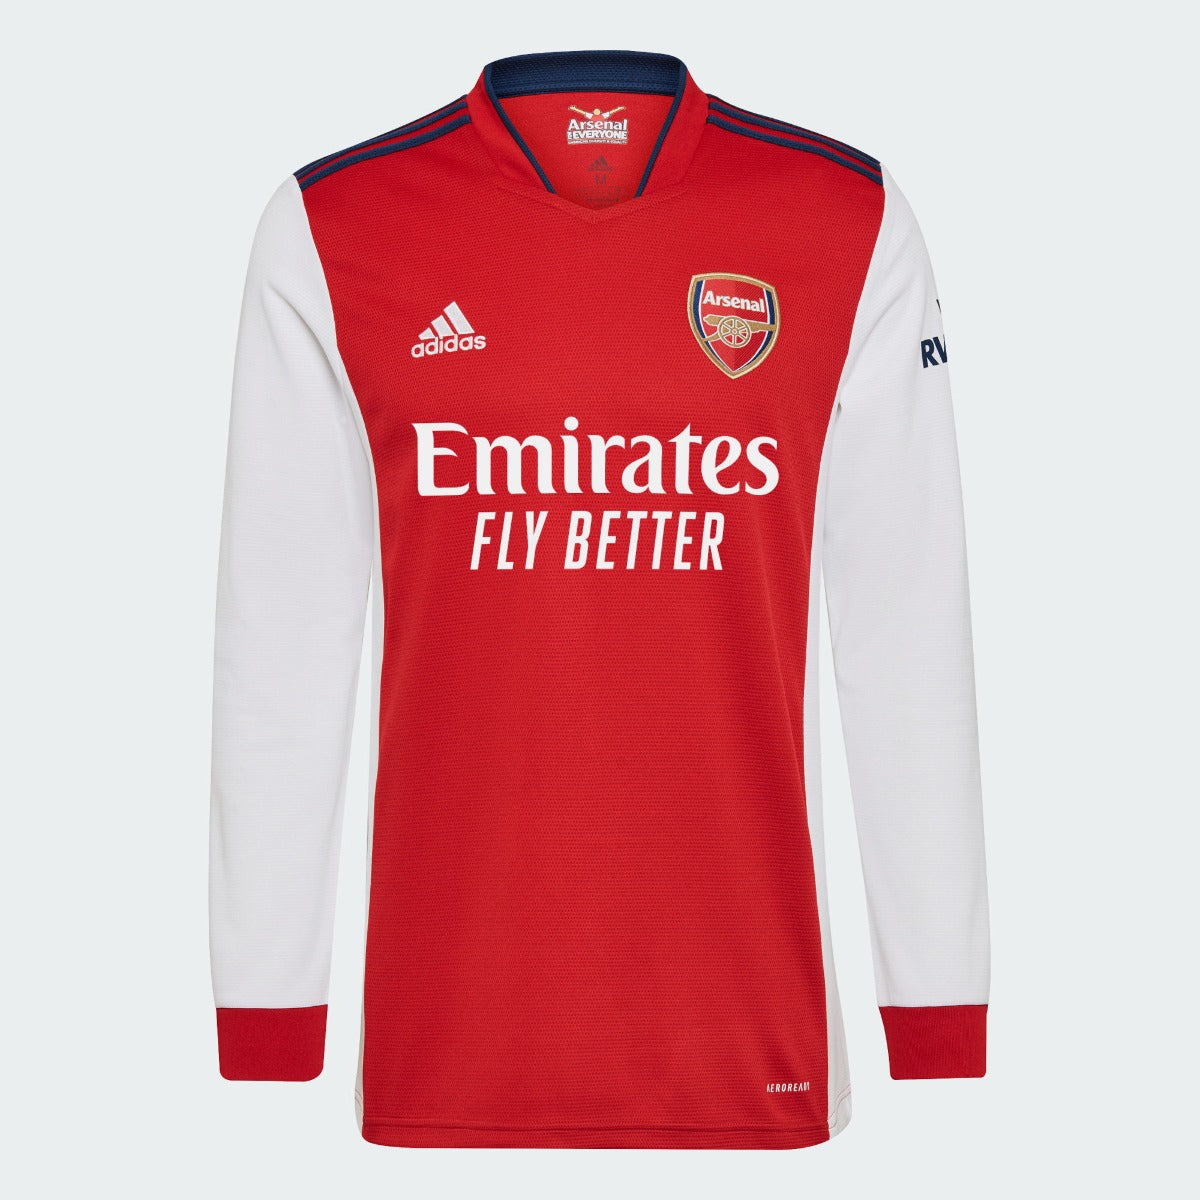 Adidas, Maglia a maniche lunghe Adidas 2021-22 Arsenal Home - Scarlatto-Bianco